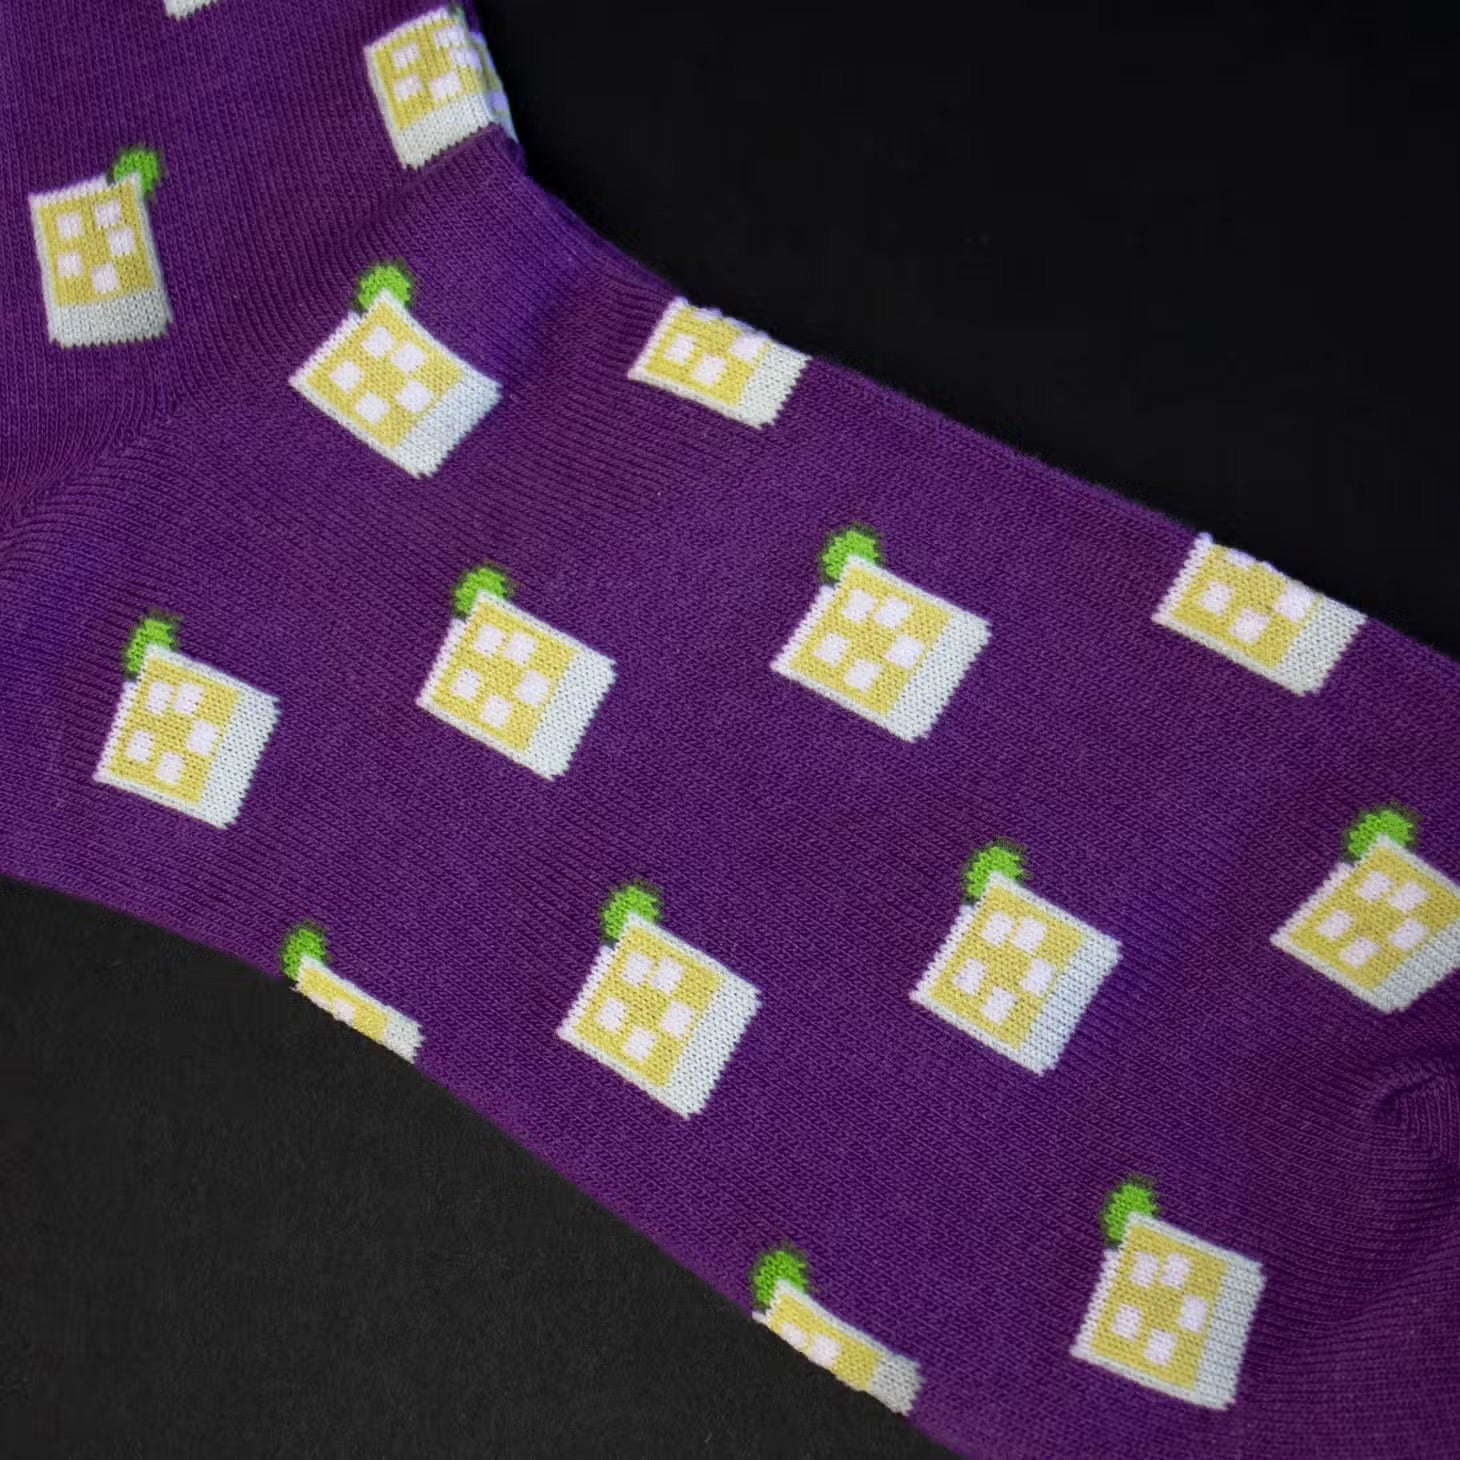 Margarita print on purple socks.